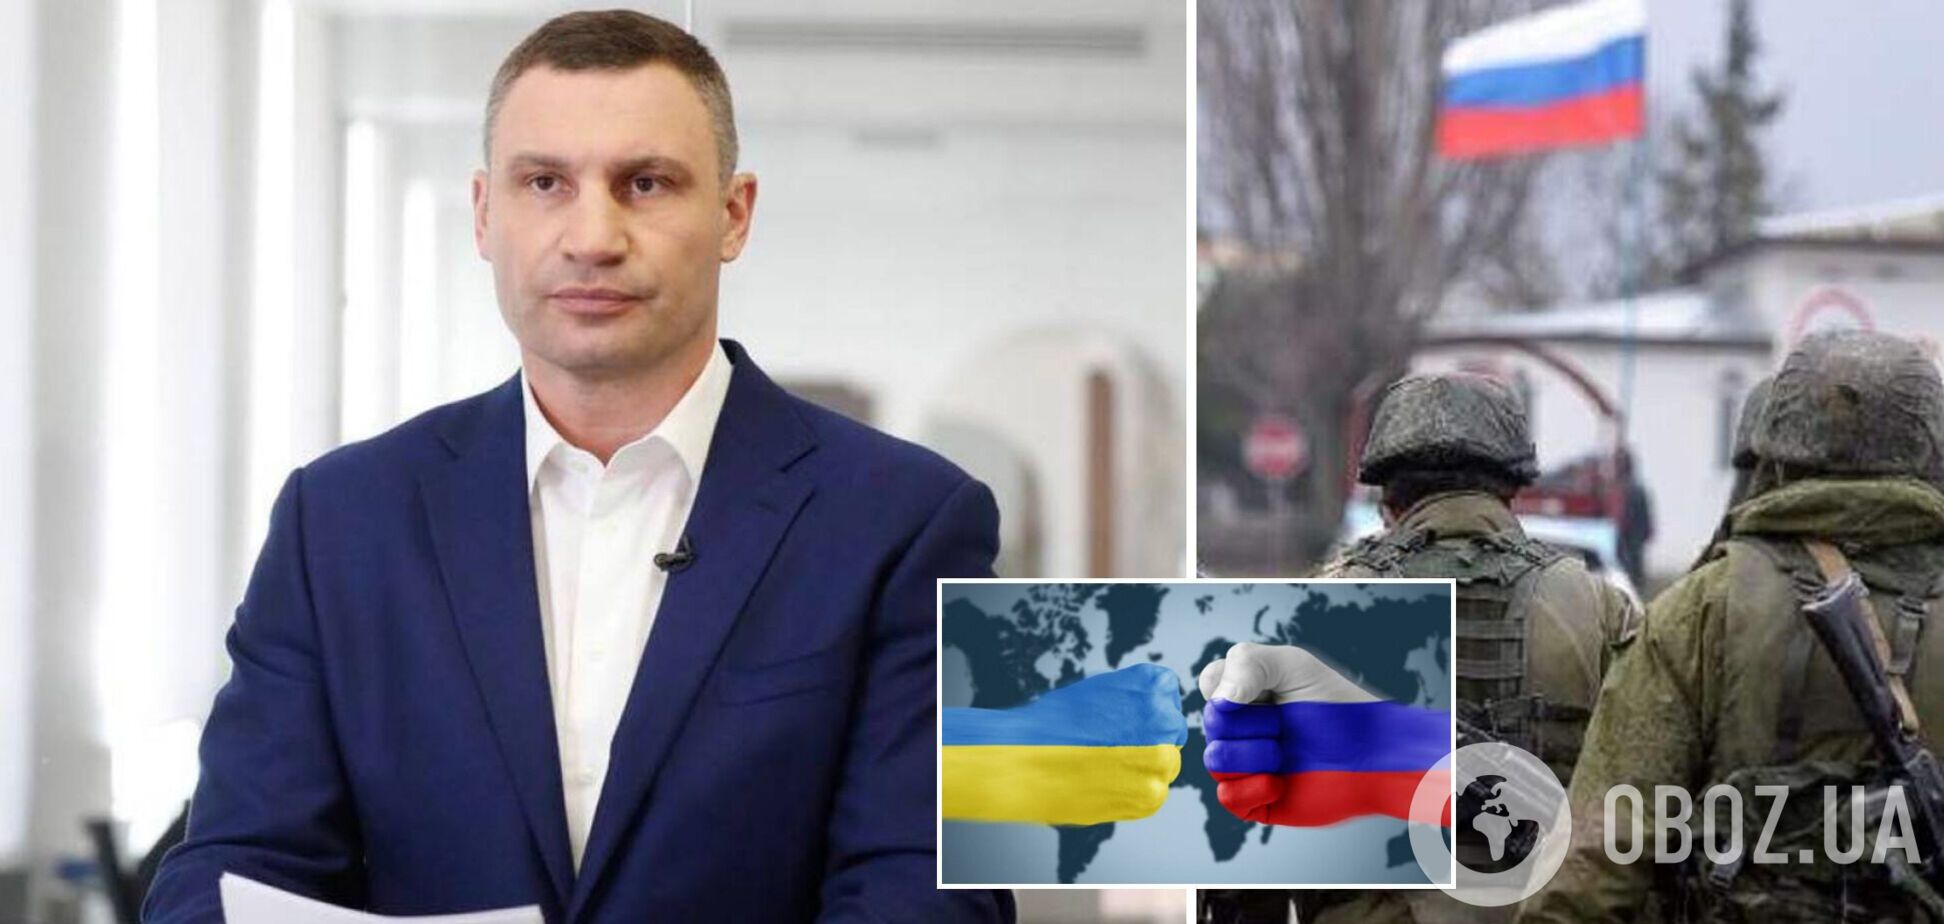 Возьму автомат и пойду воевать: Кличко заявил, что готов стать на защиту Украину в случае вторжения РФ. Видео